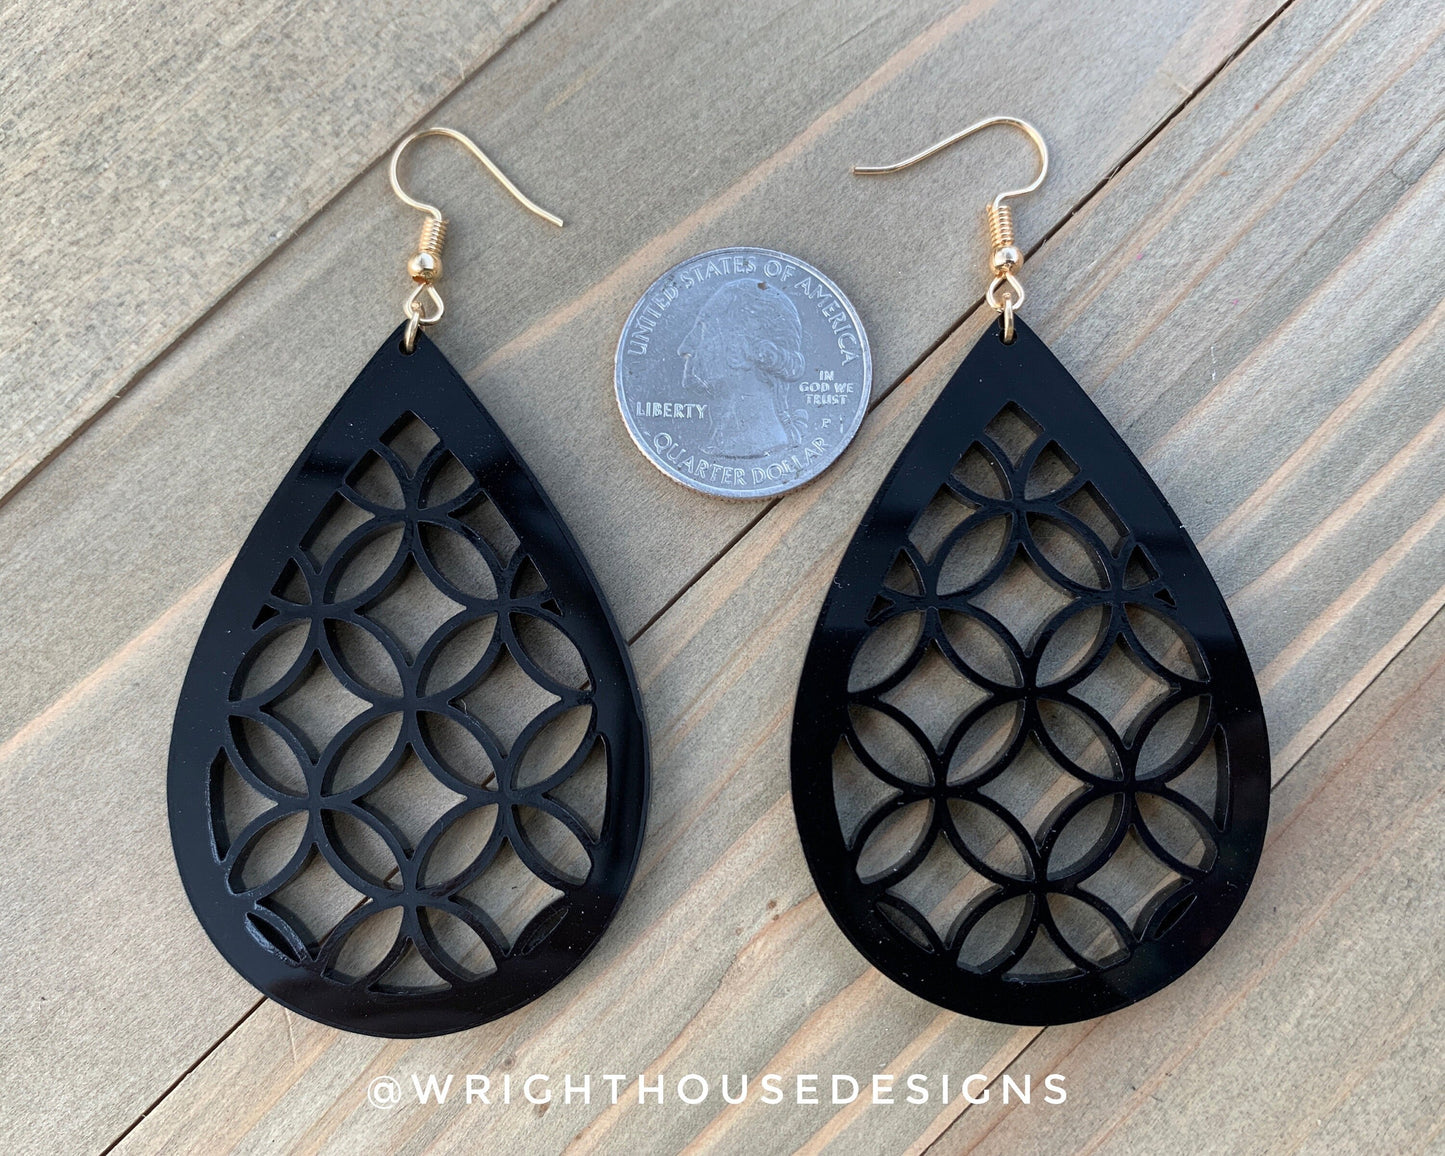 Flower of life Style Black Acrylic - Geometric Pattern Earrings